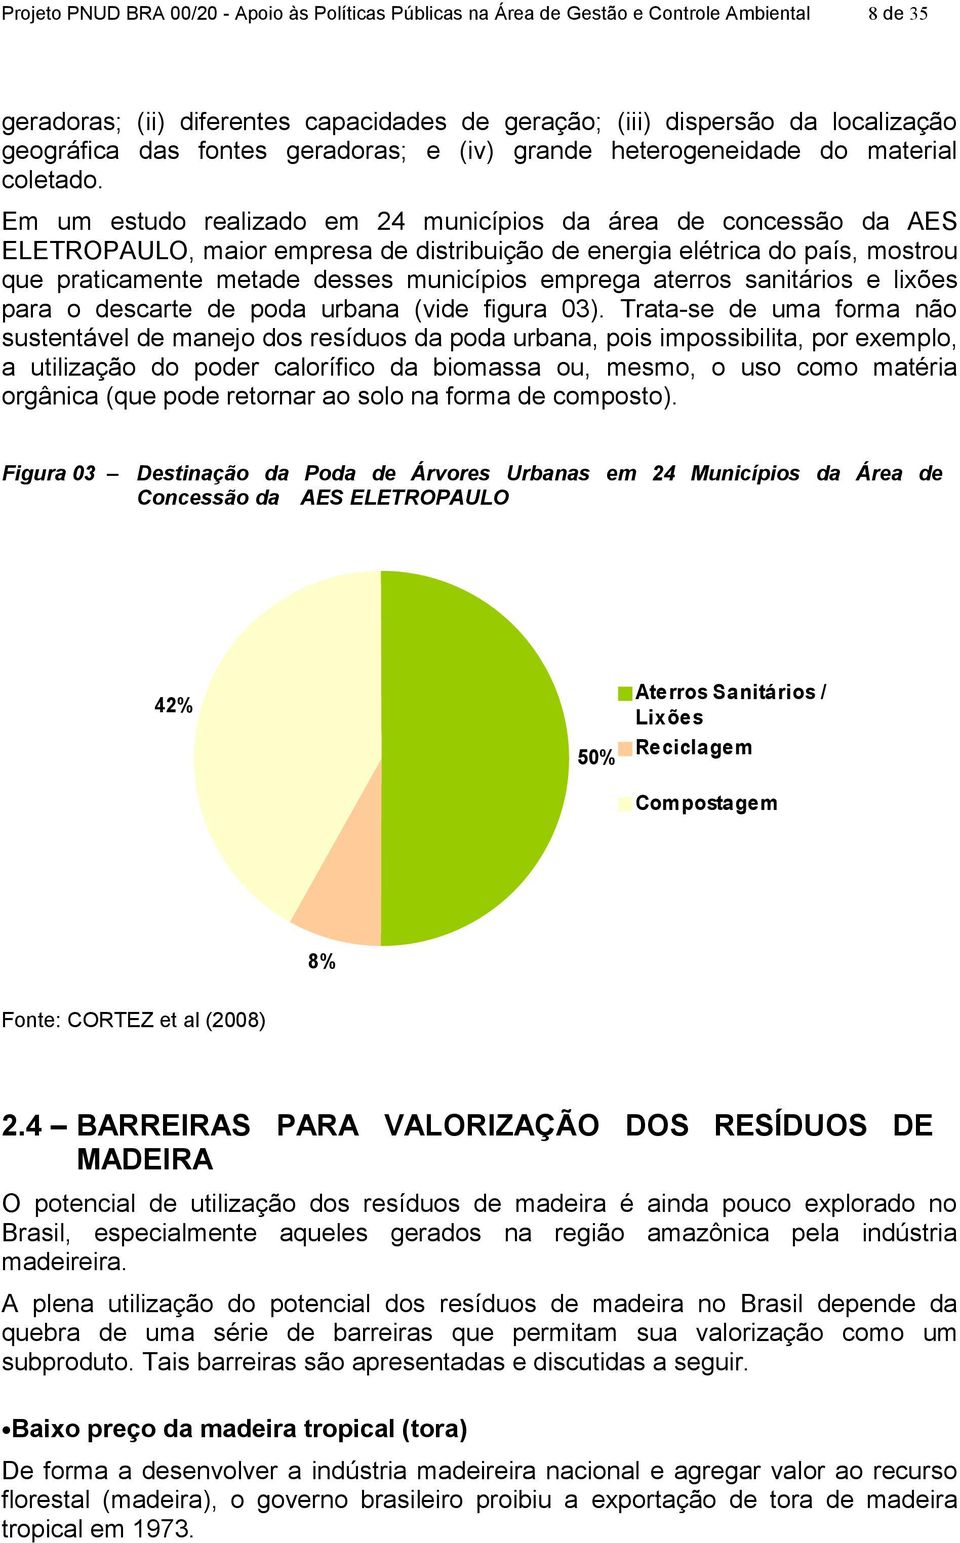 Em um estudo realizado em 24 municípios da área de concessão da AES ELETROPAULO, maior empresa de distribuição de energia elétrica do país, mostrou que praticamente metade desses municípios emprega